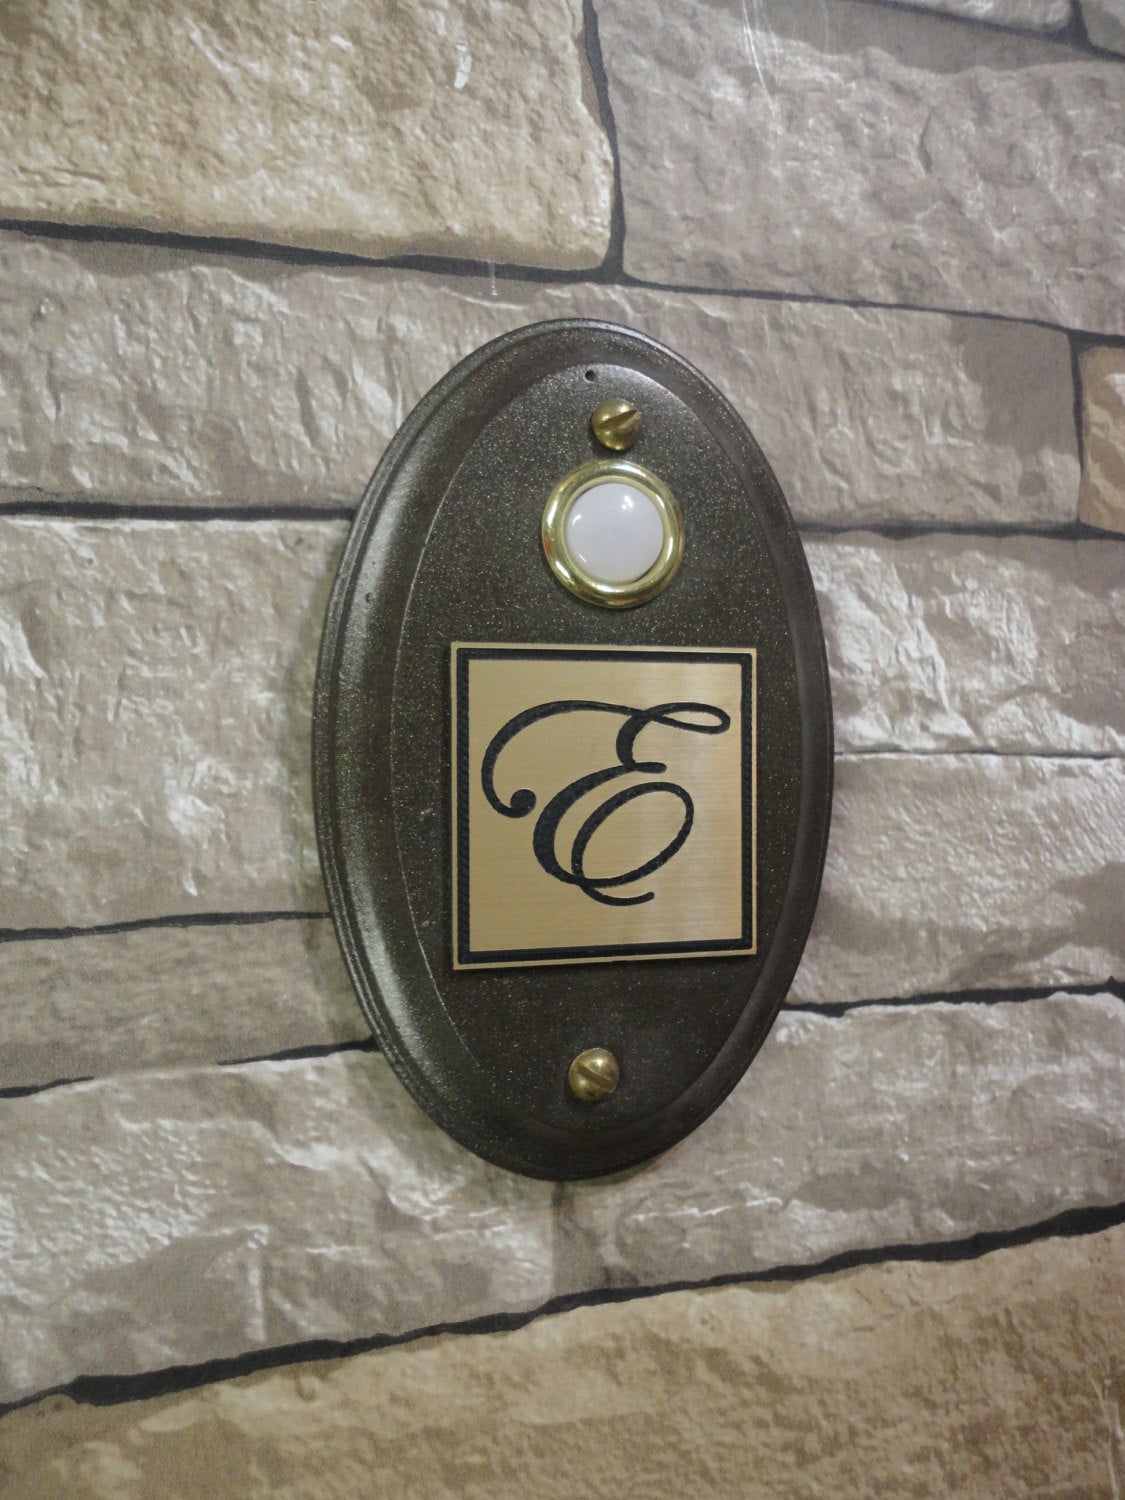 lighted doorbell button